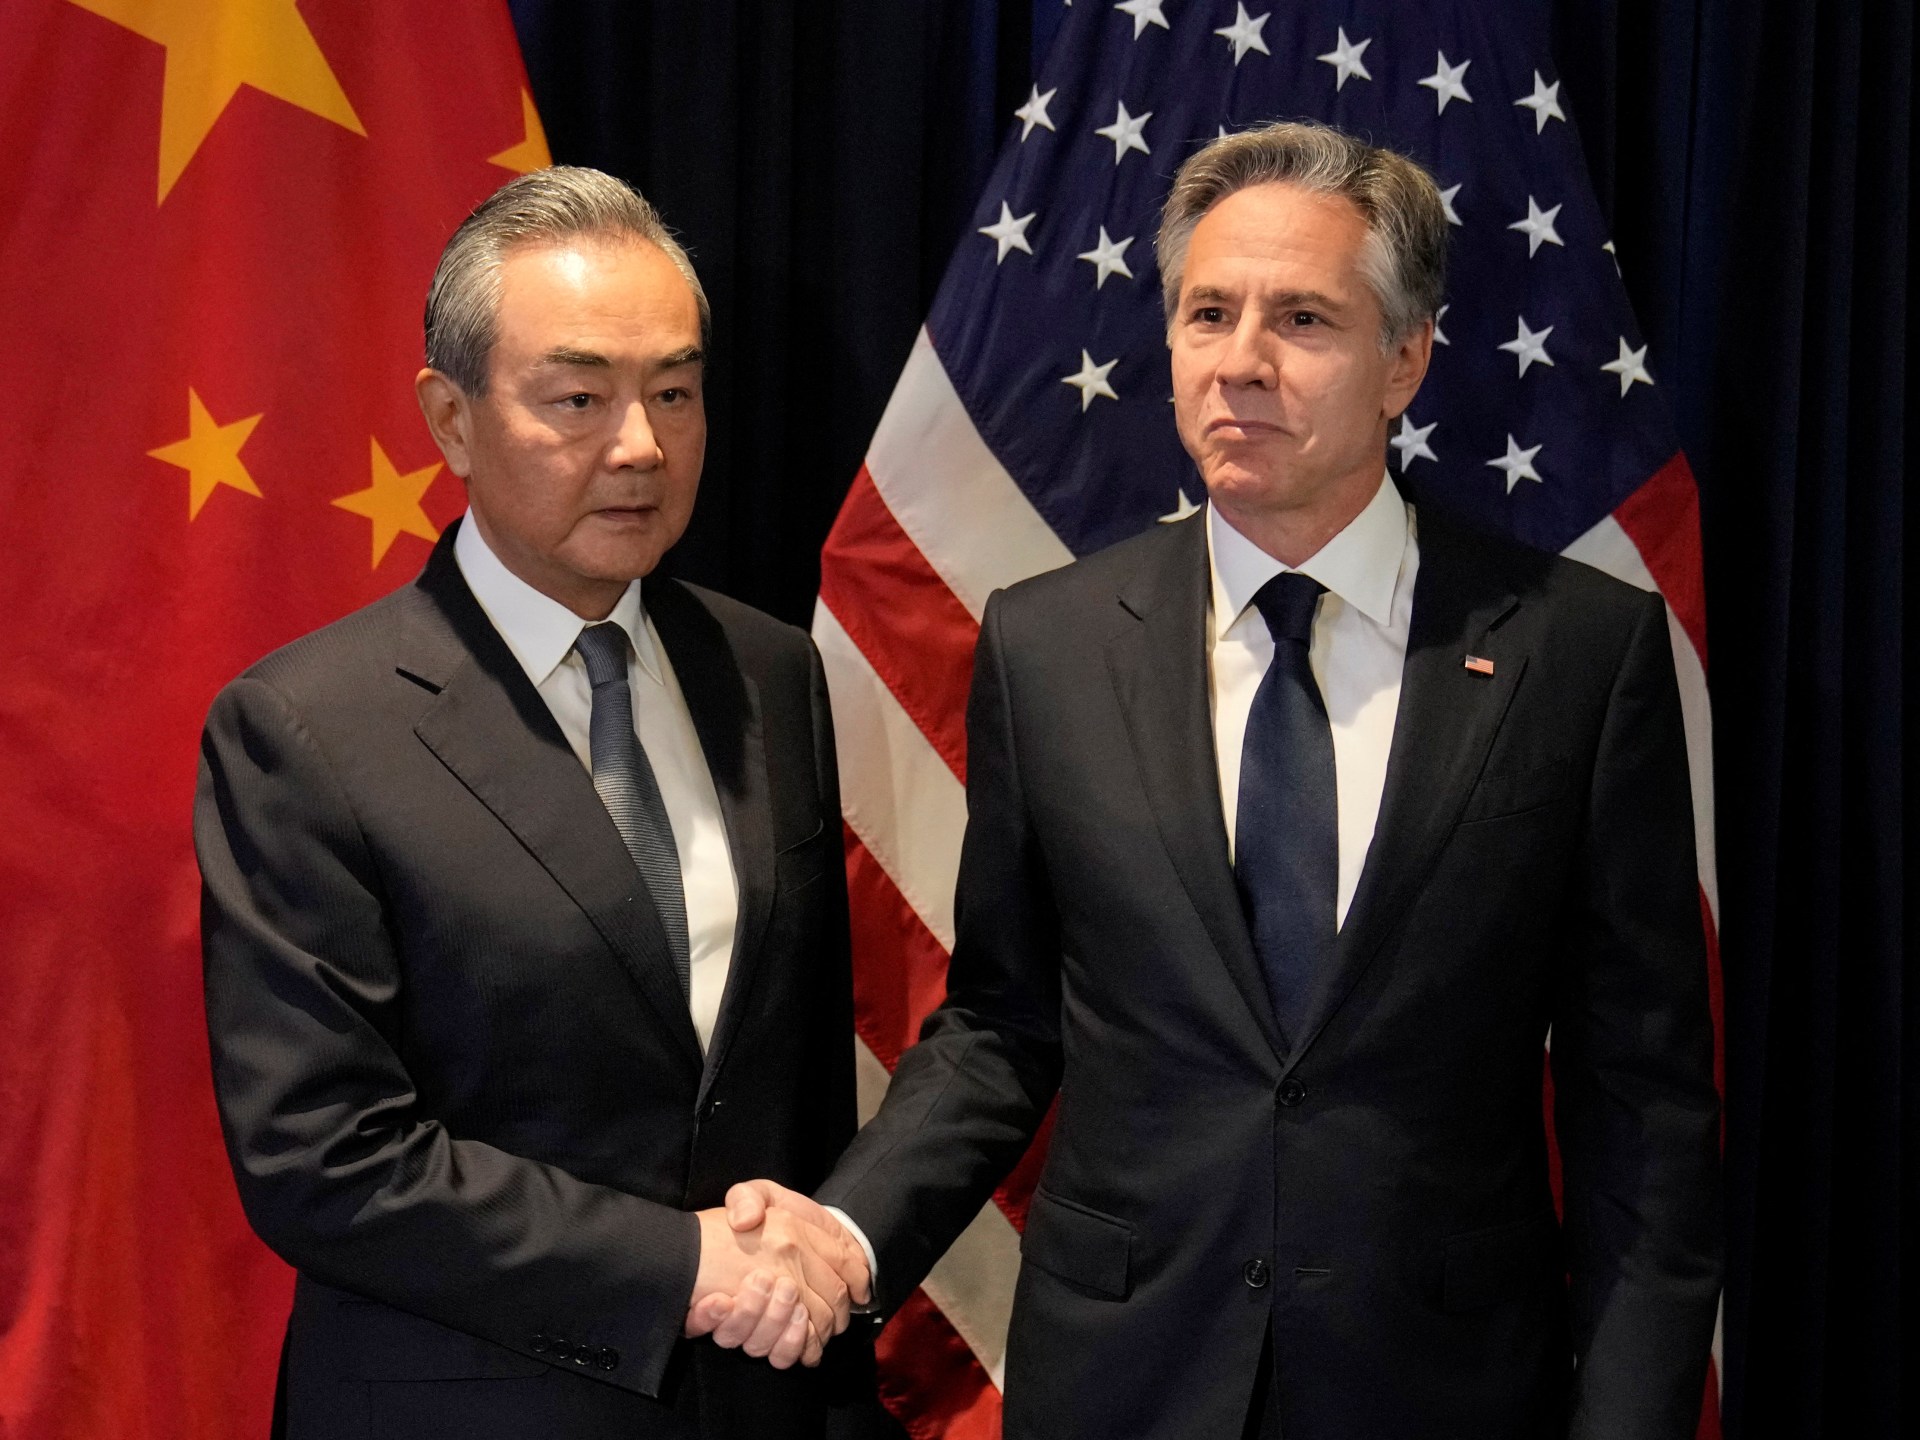 Blinken bertemu diplomat China Wang di tengah tuduhan peretasan |  Berita Politik